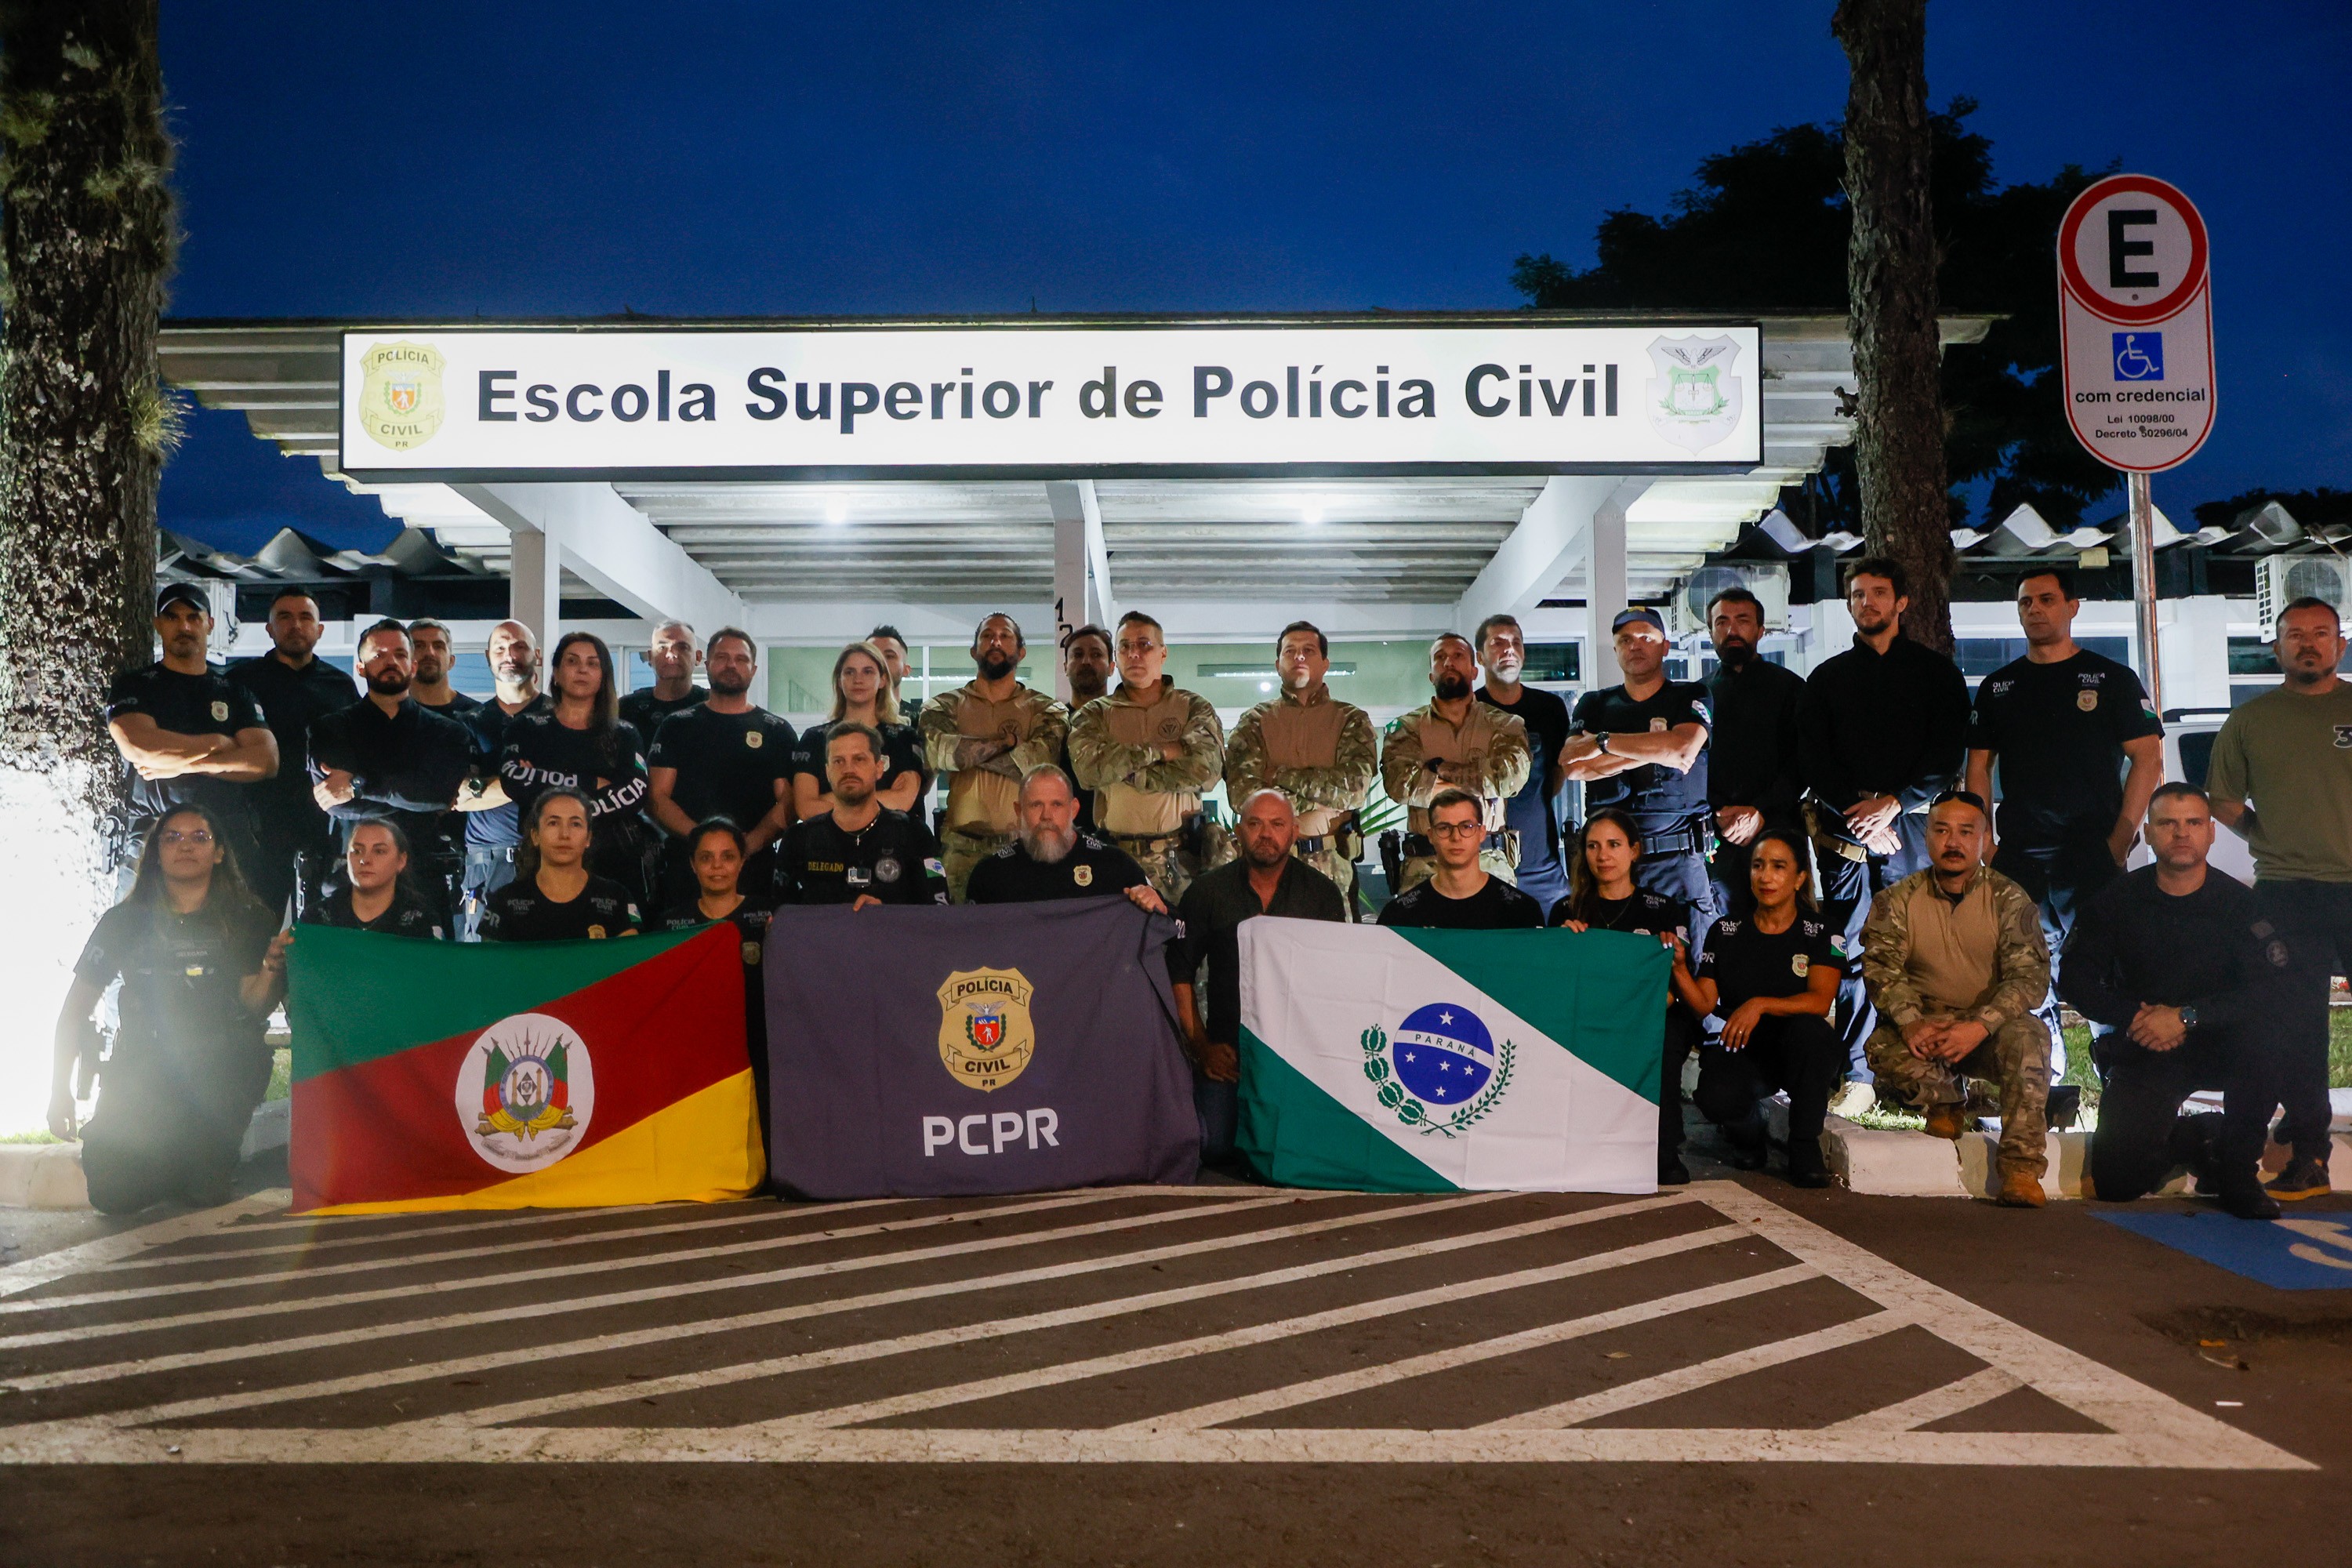 Paraná envia 30 policiais civis para reforçar segurança contra roubos no Rio Grande do Sul